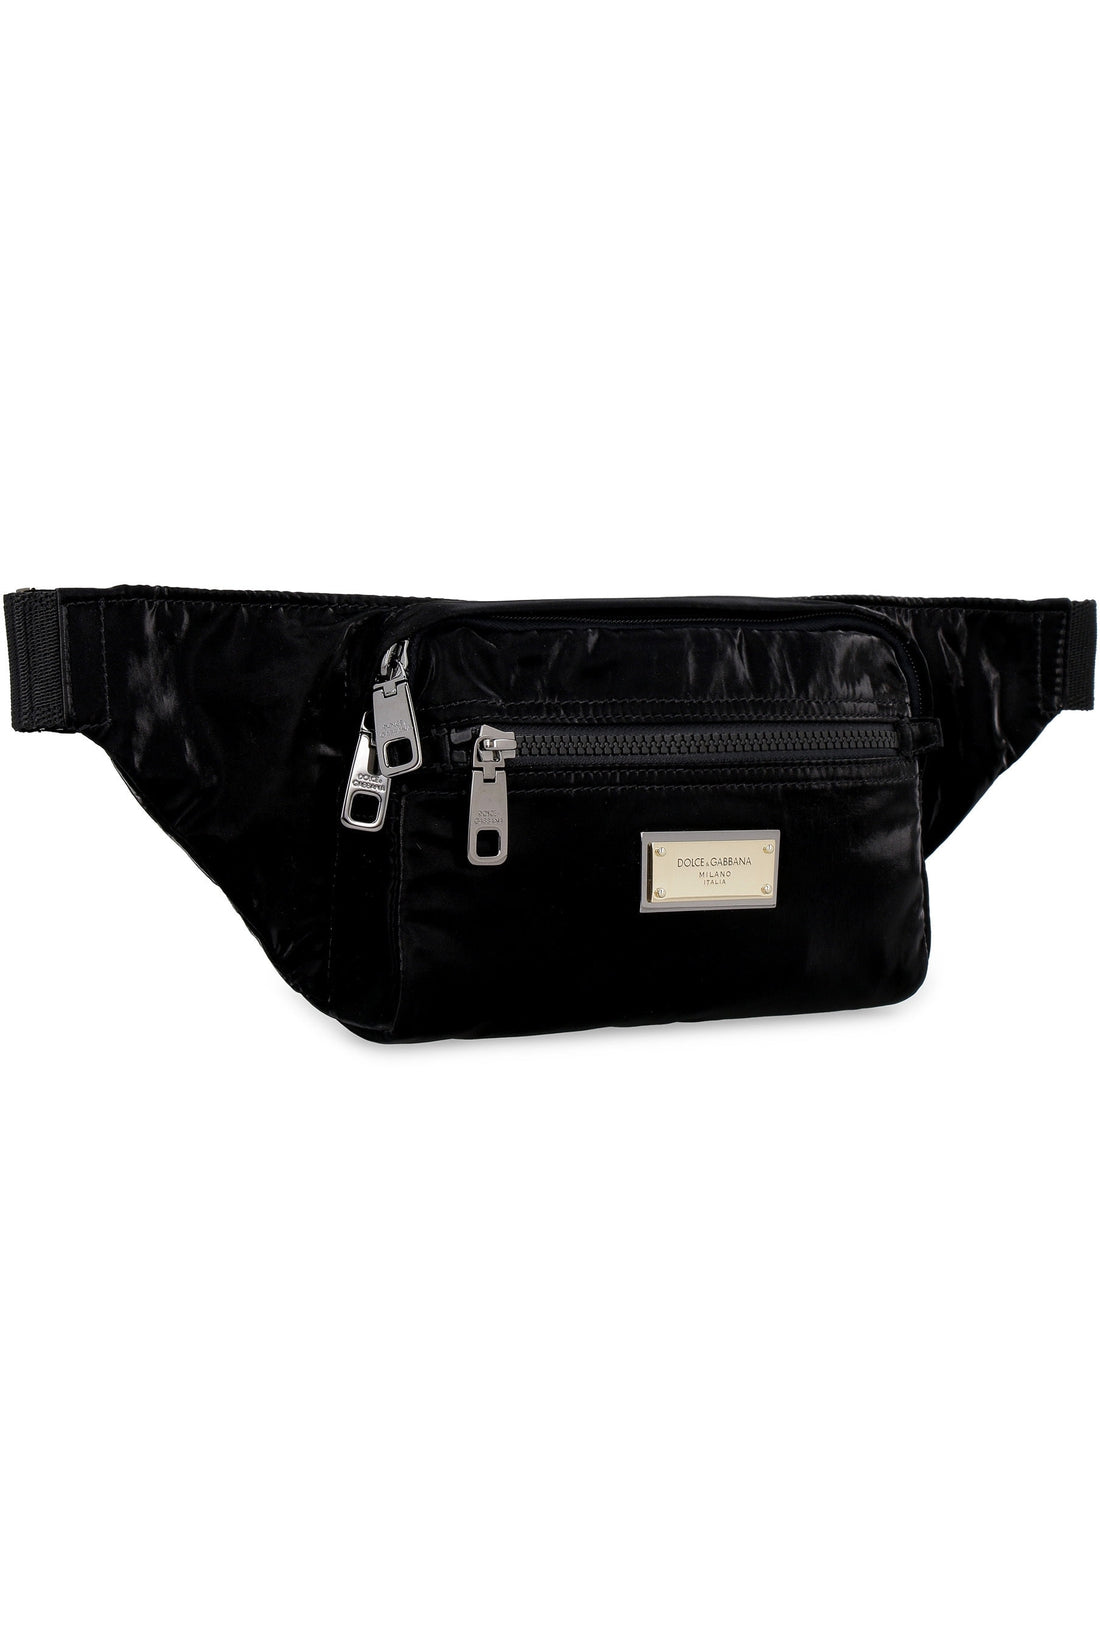 Dolce & Gabbana-OUTLET-SALE-Belt bag with logo-ARCHIVIST